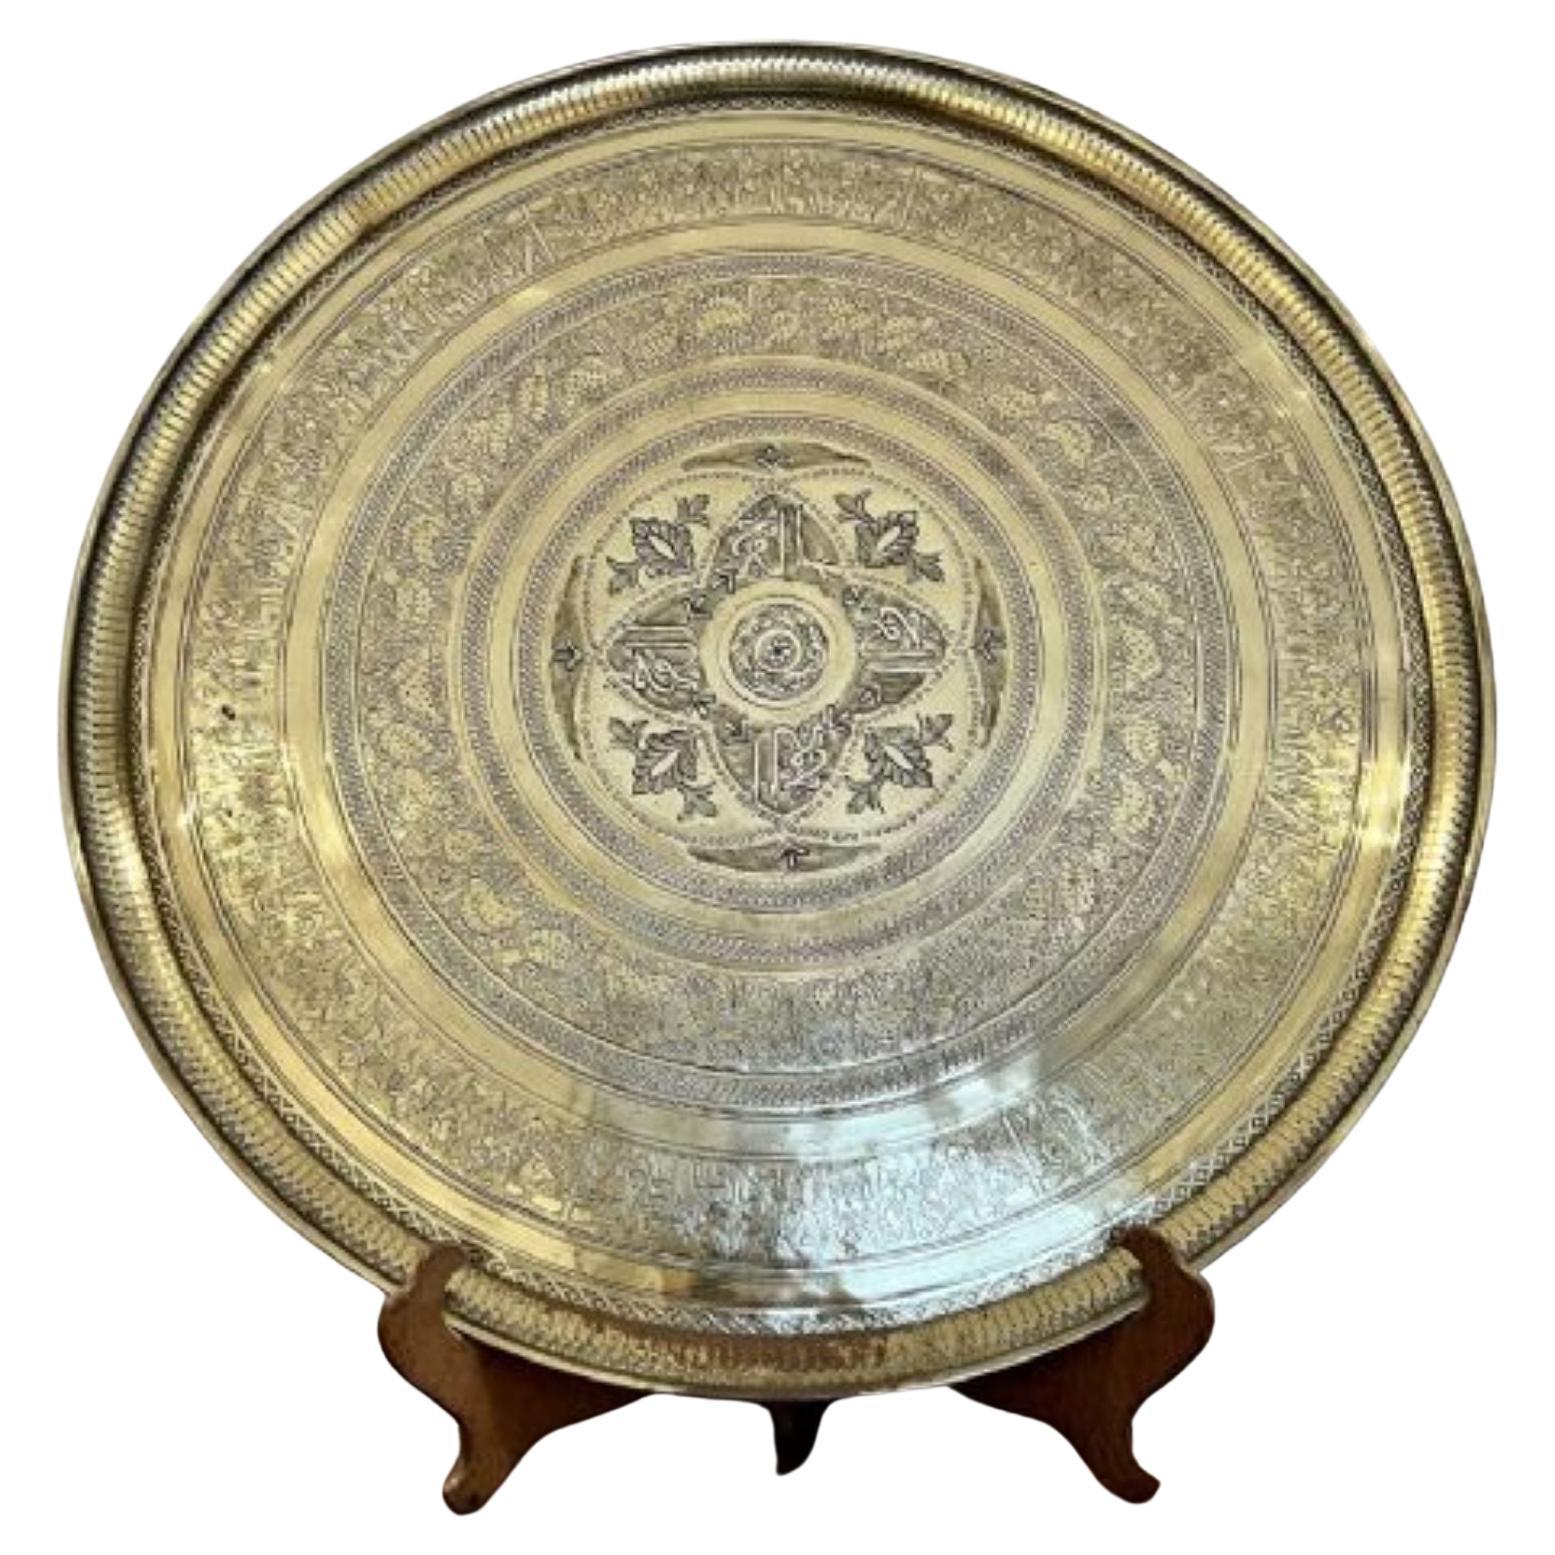 Große antike viktorianische Qualität graviert runden gemischten Metall-Tablett